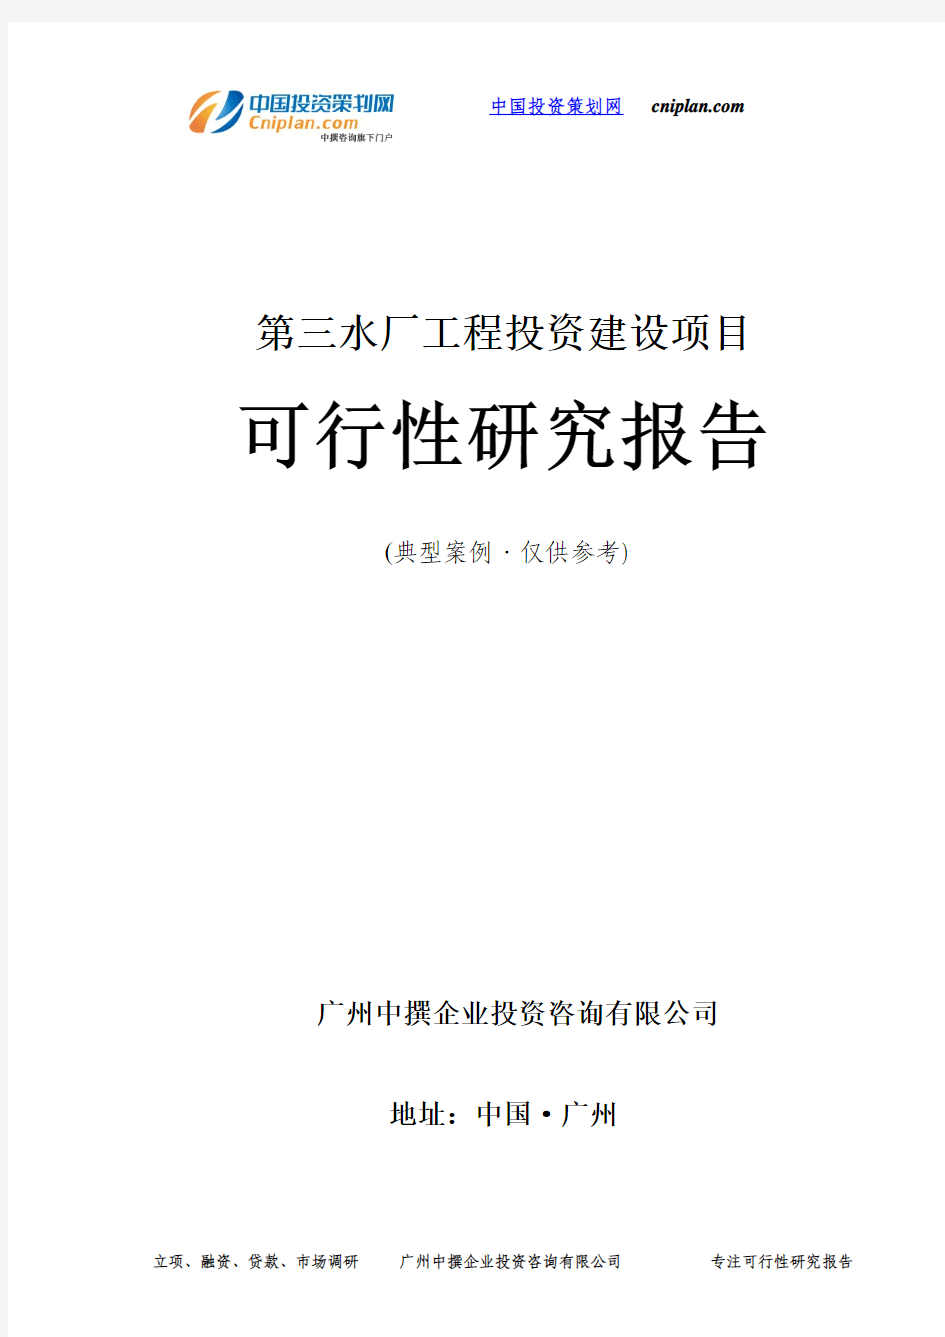 第三水厂工程投资建设项目可行性研究报告-广州中撰咨询